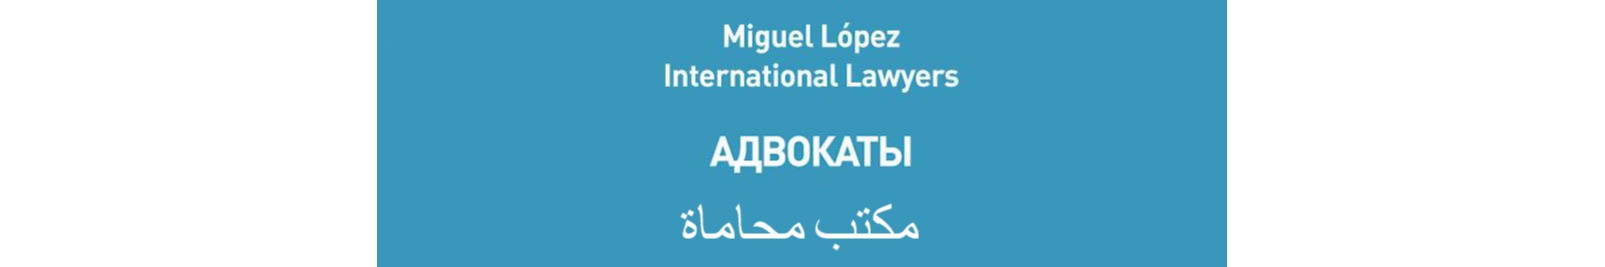 Miguel López International Lawyers